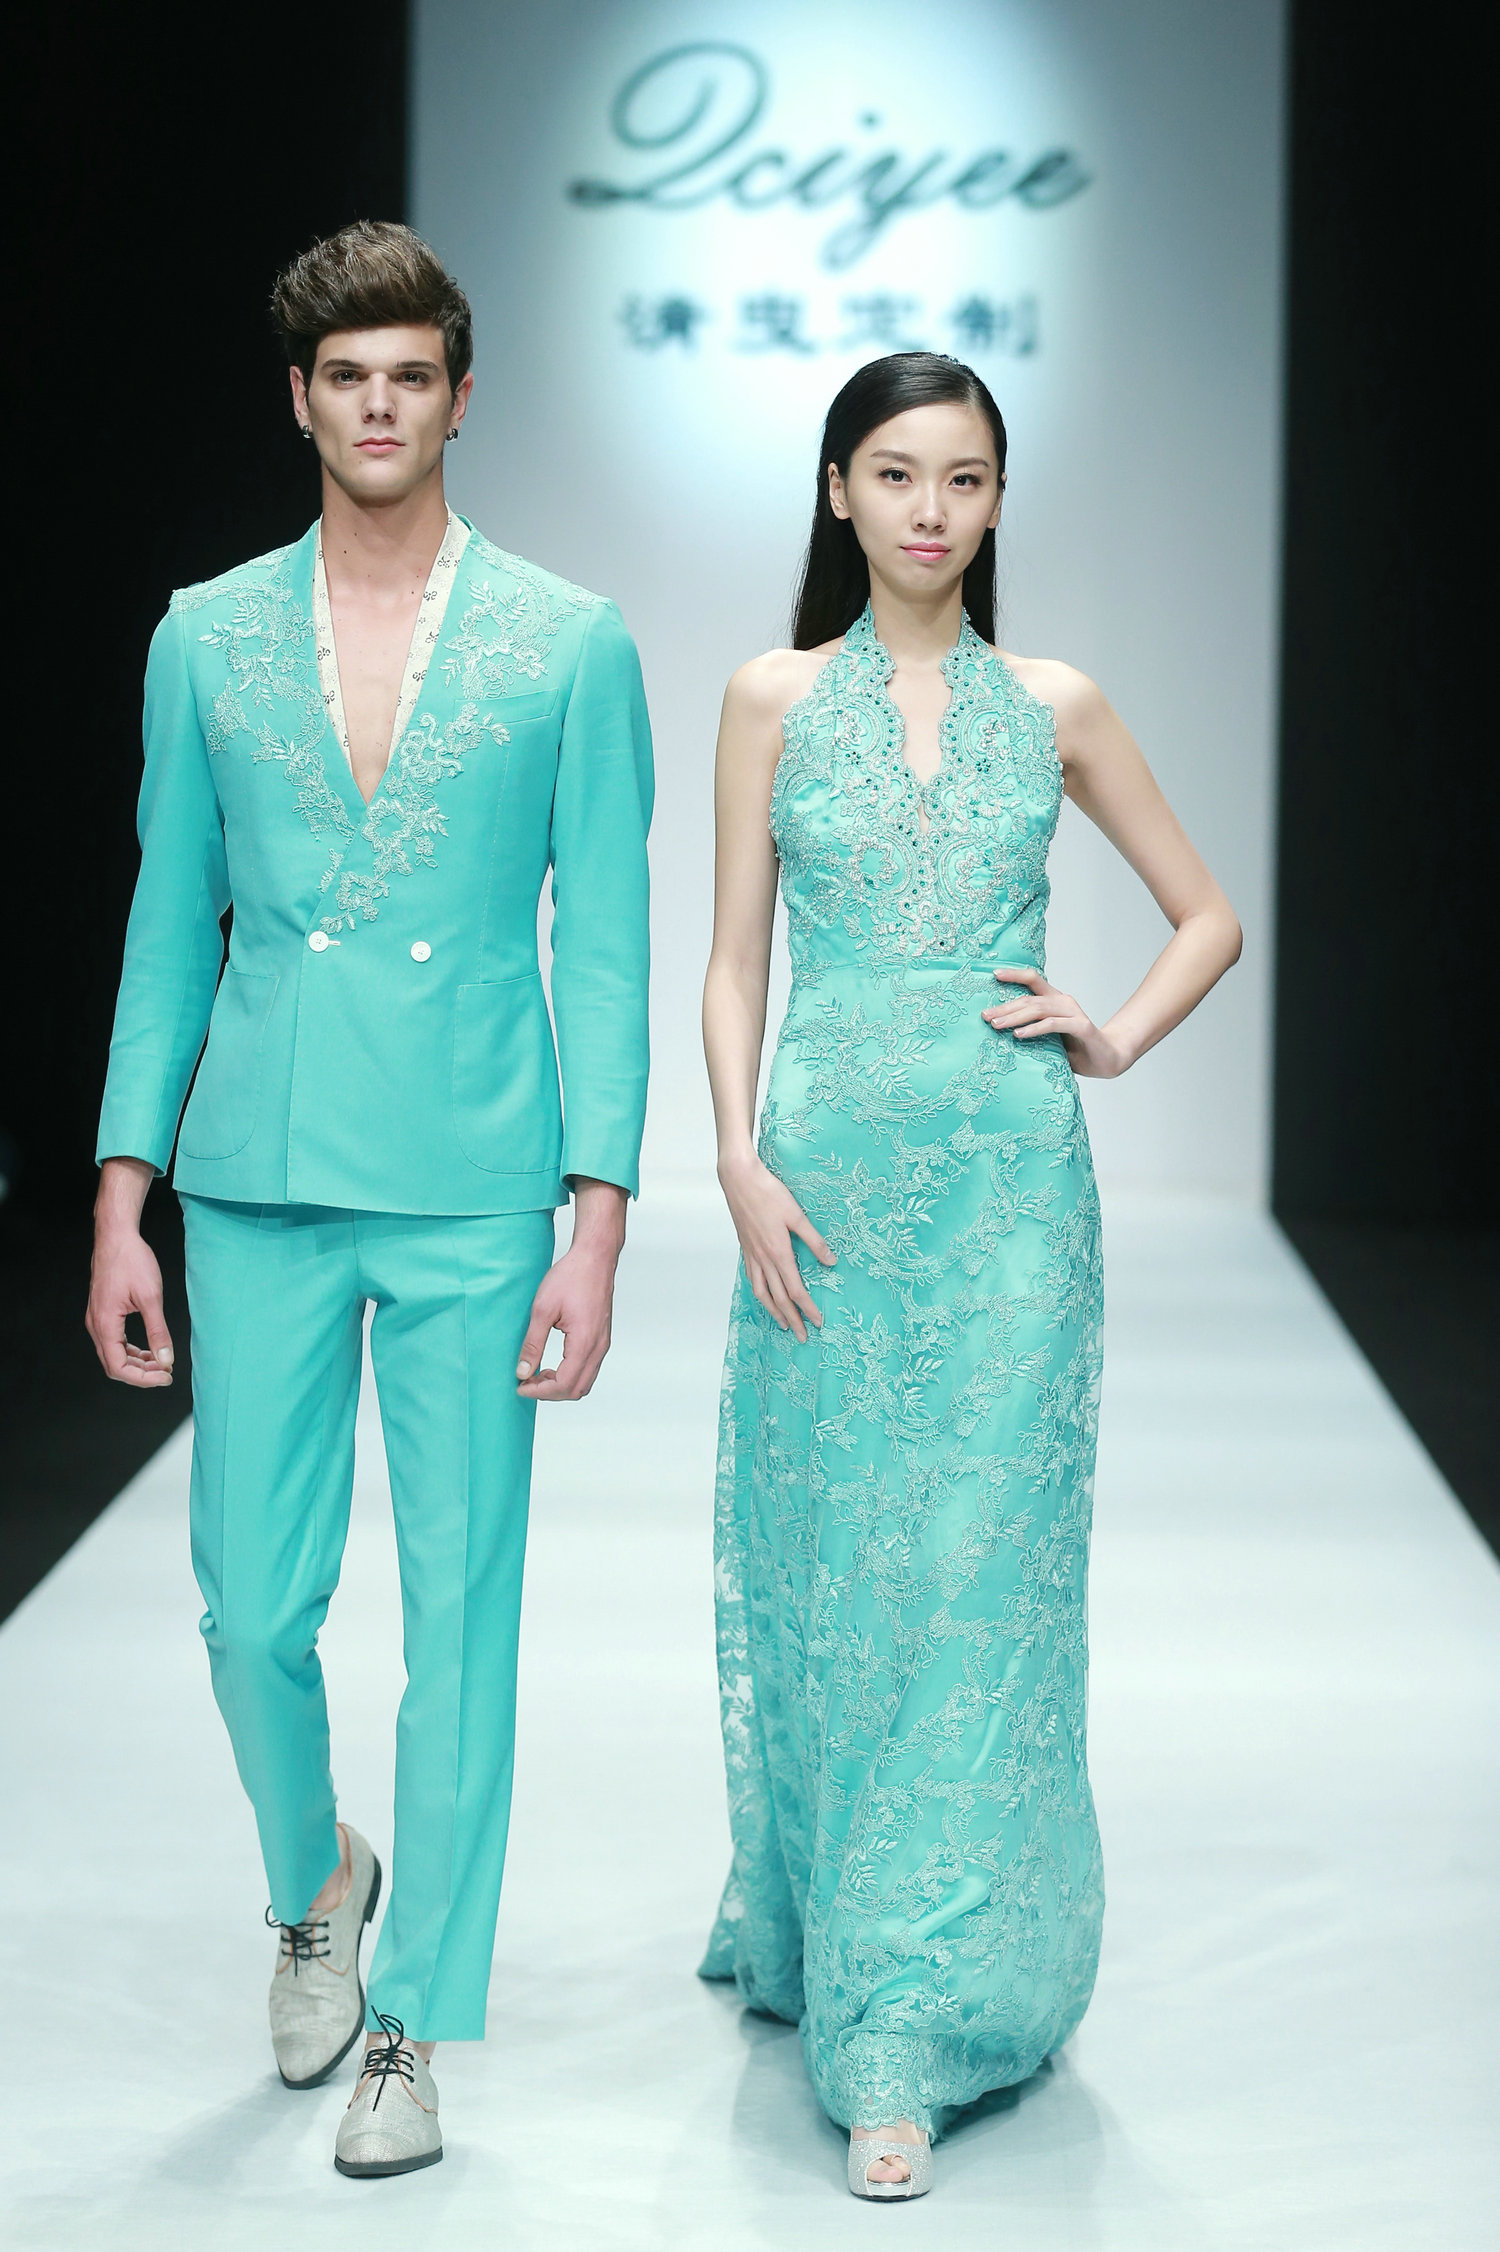 2016春夏系列中国国际时装周 清曳·倩时装发布